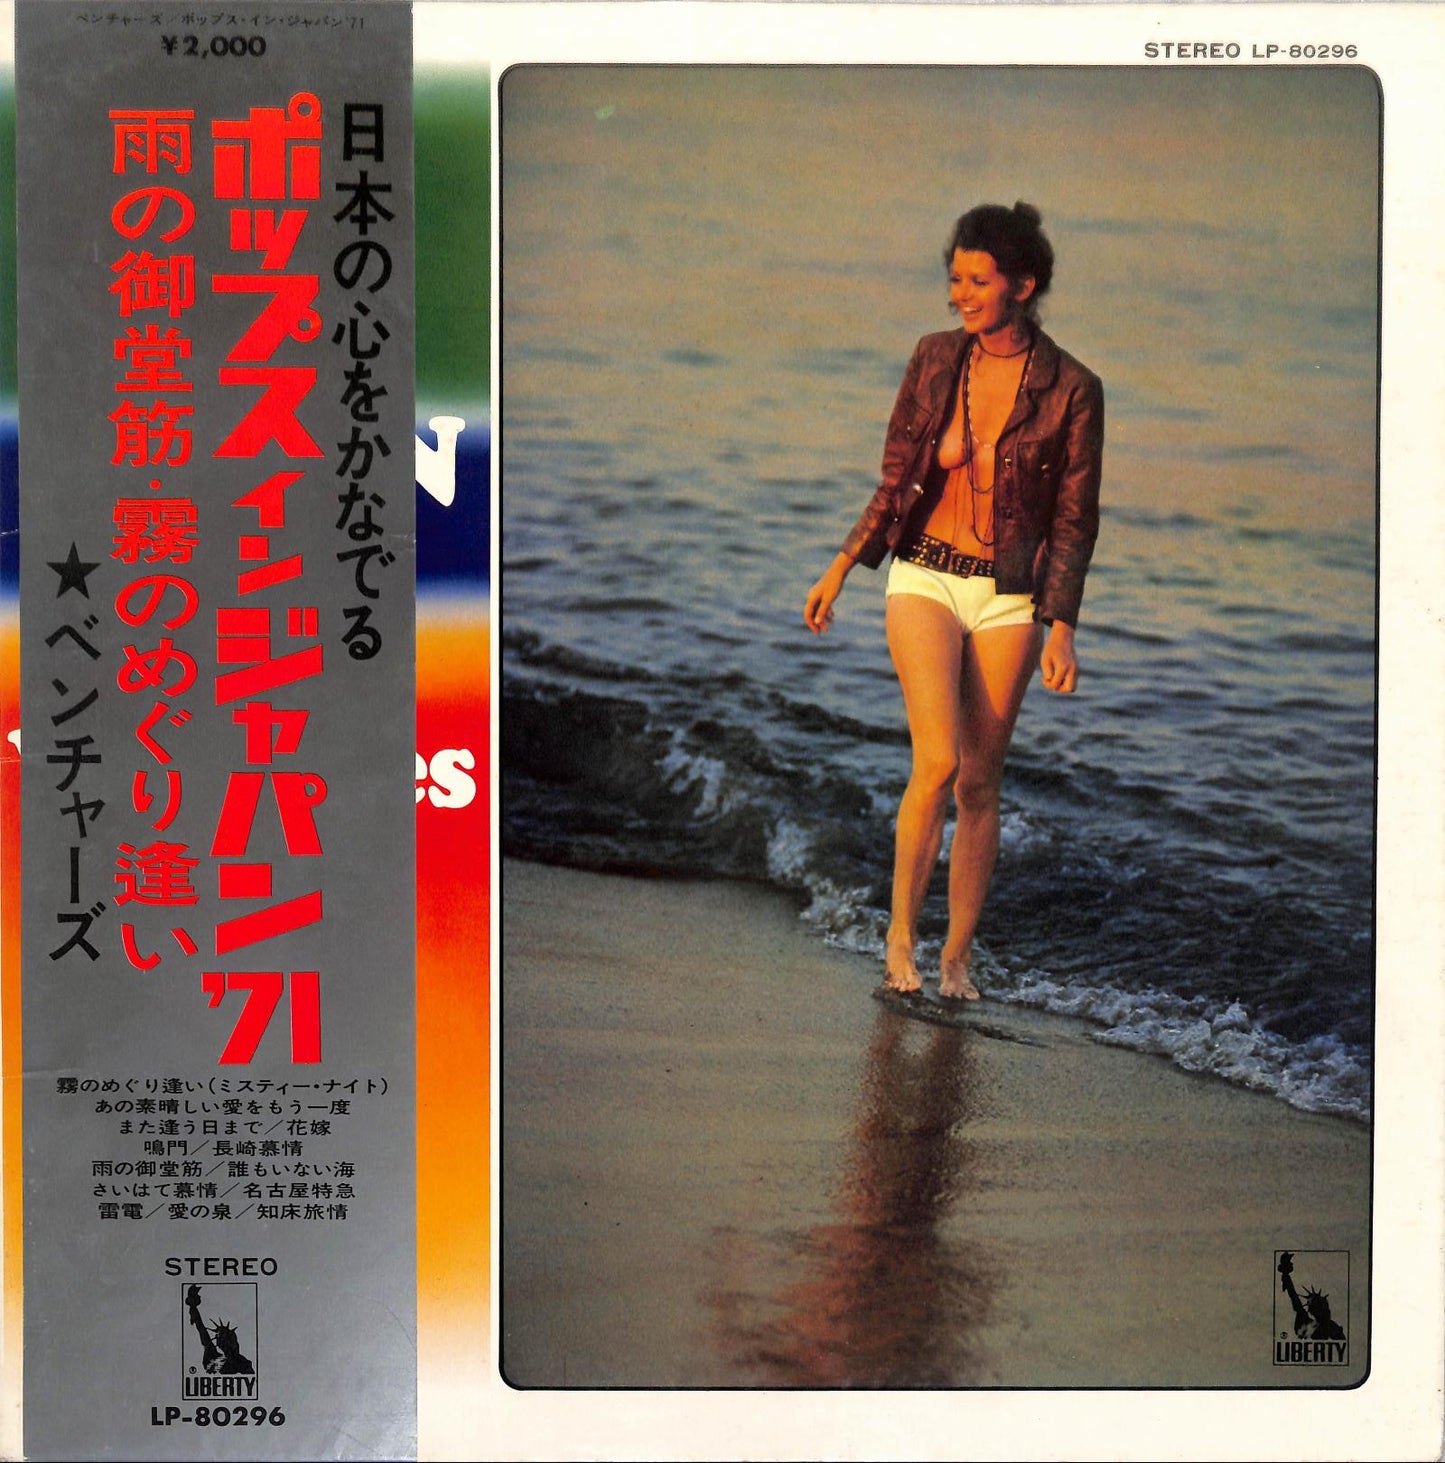 THE VENTURES - Pops In Japan '71